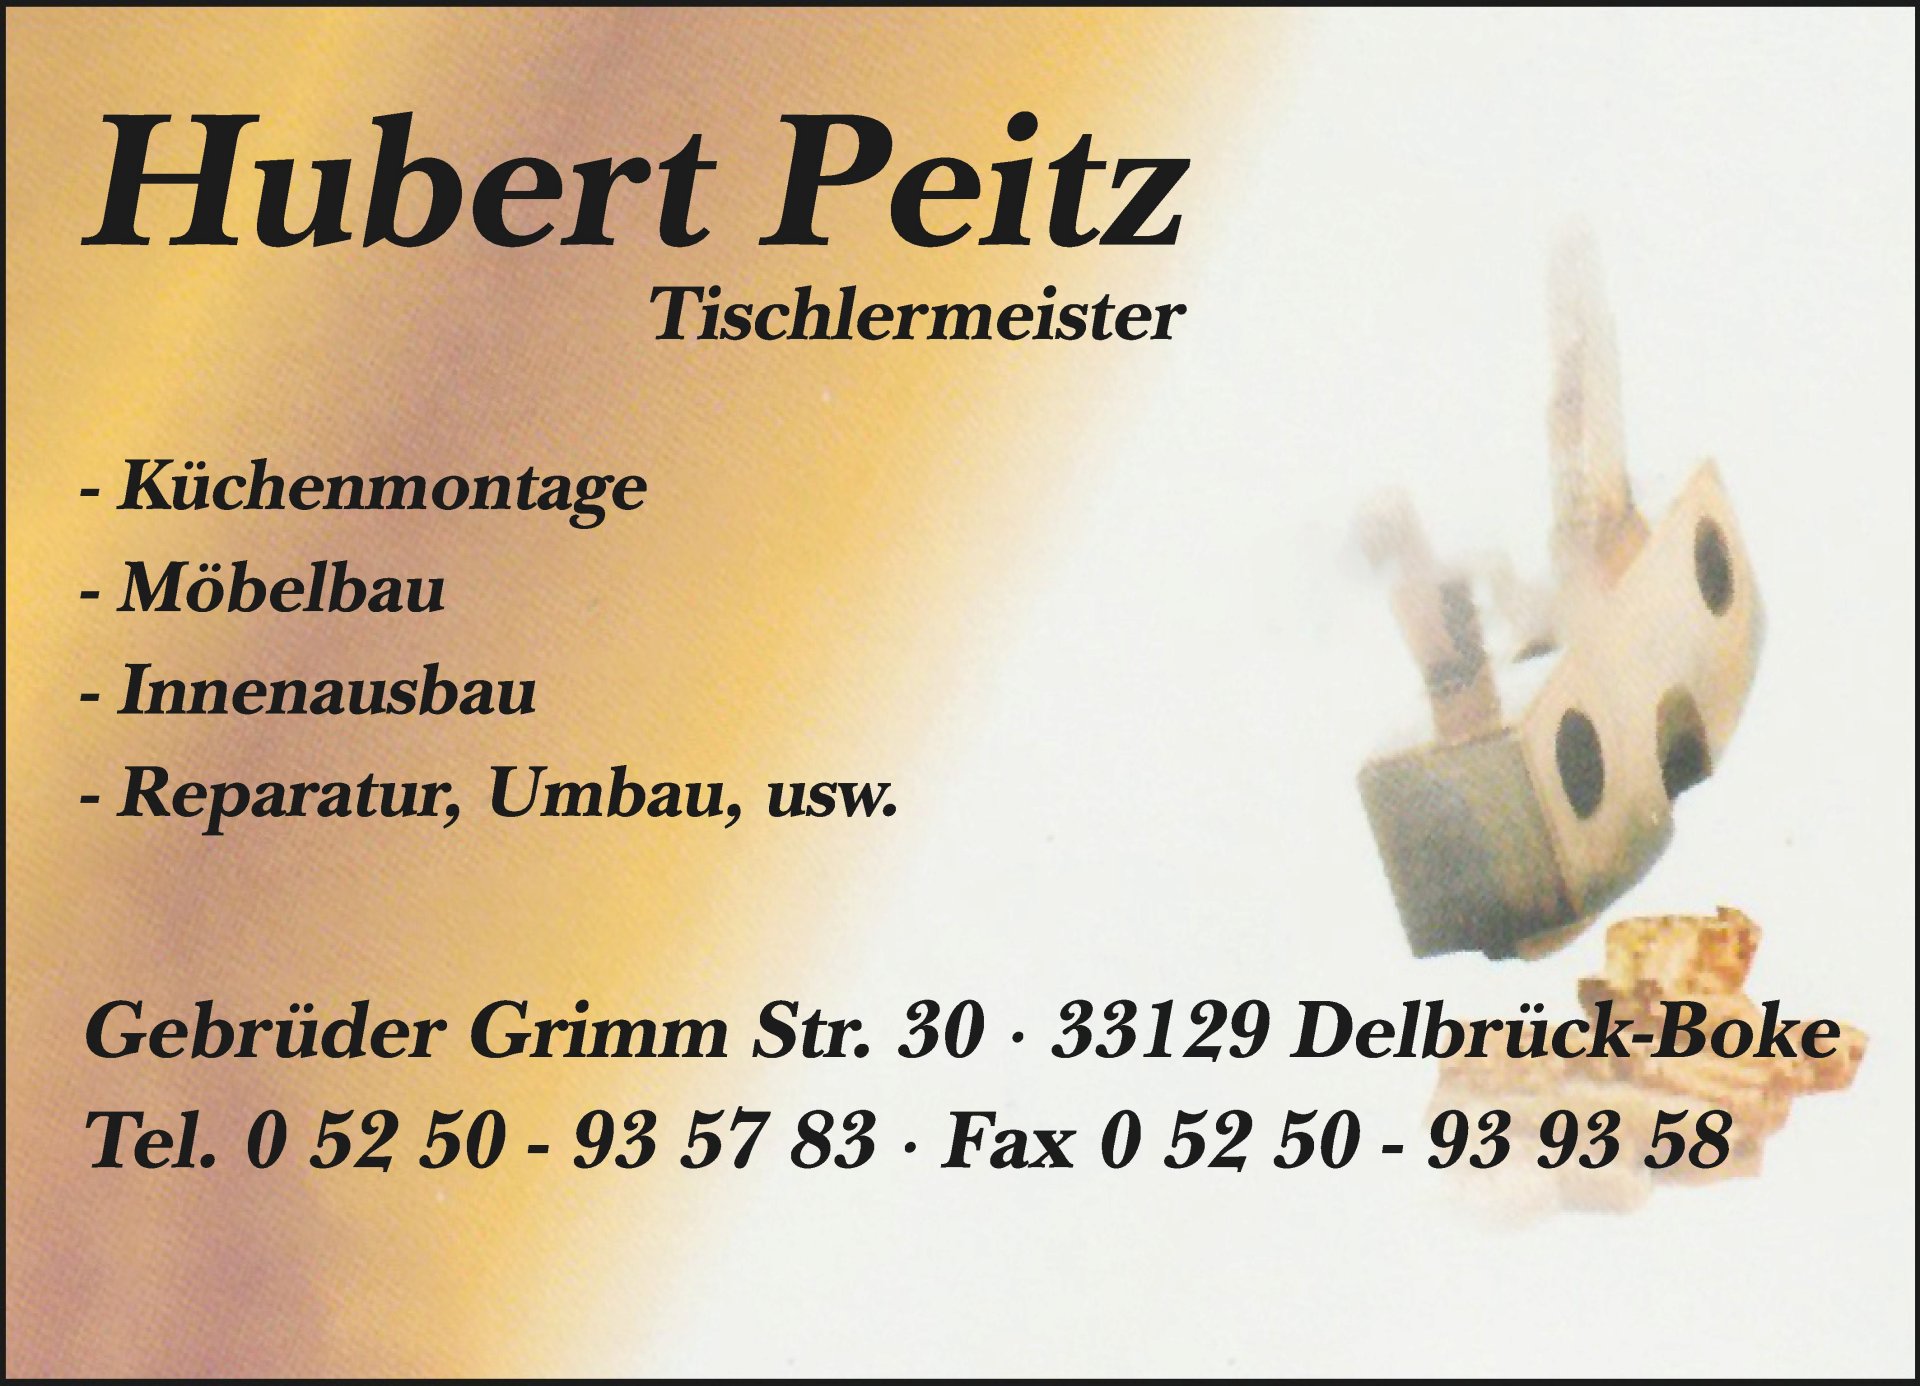 Hubert Peitz Tischlermeister